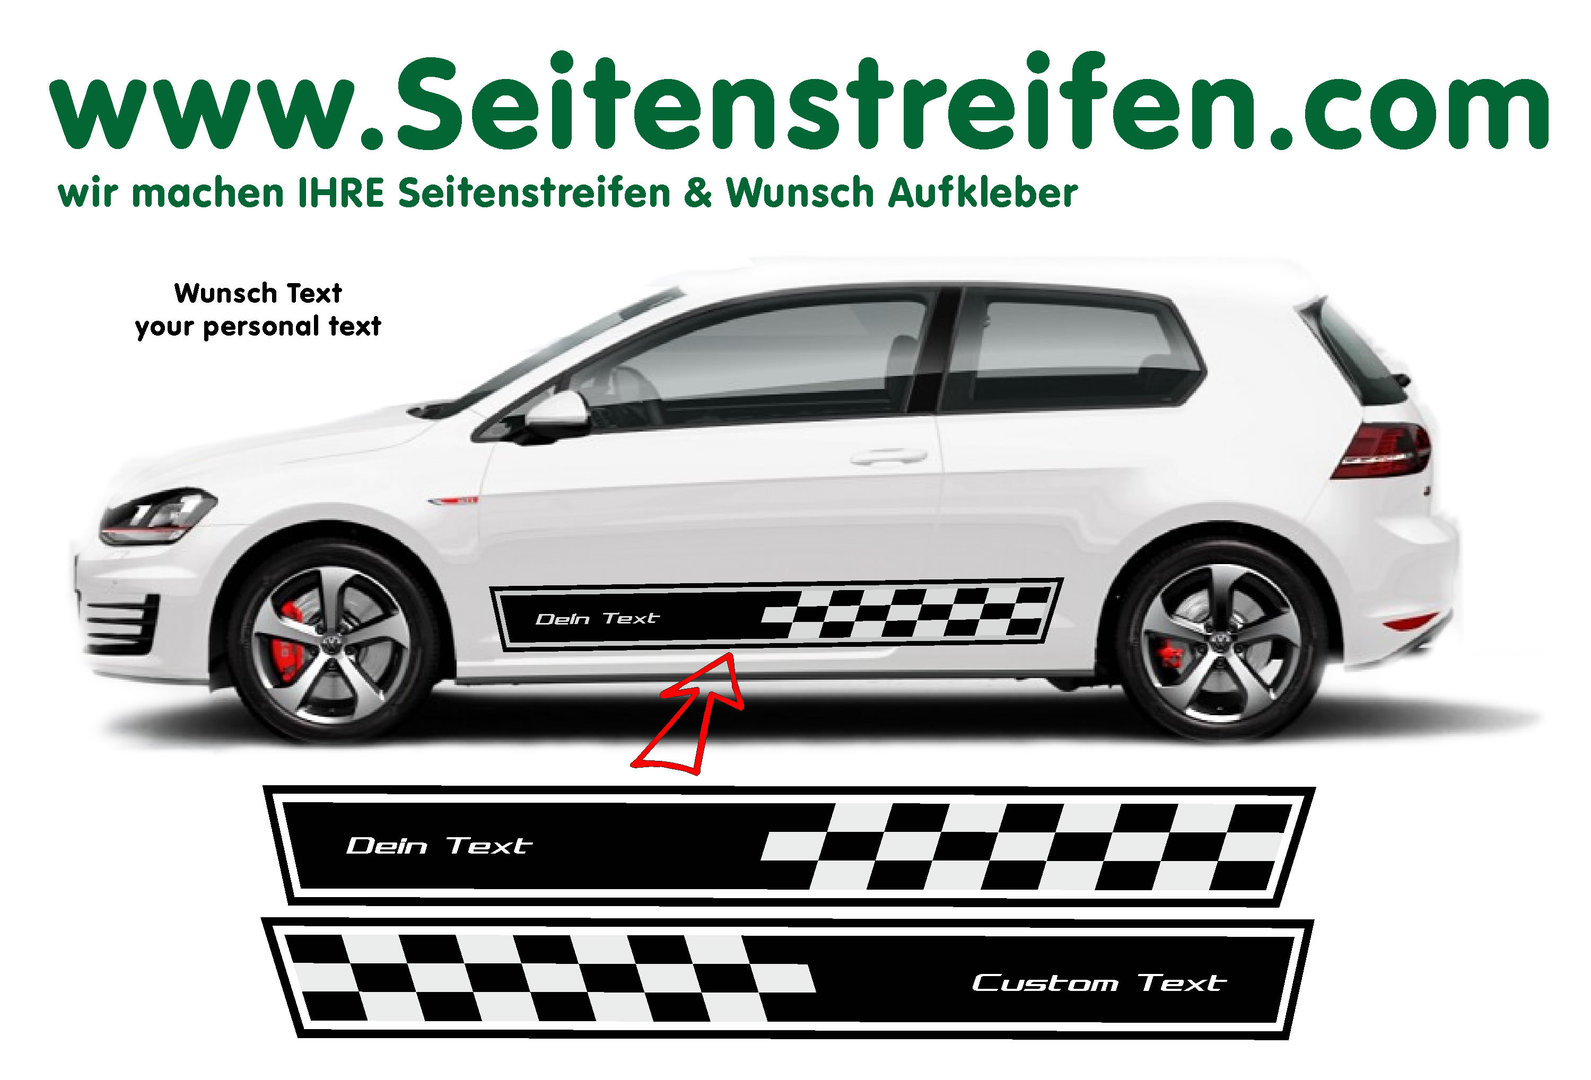 VW Golf Big Checker Wunsch Text Seitenstreifen Aufkleber Set für 3+4 Türer - Art. Nr.: 8510